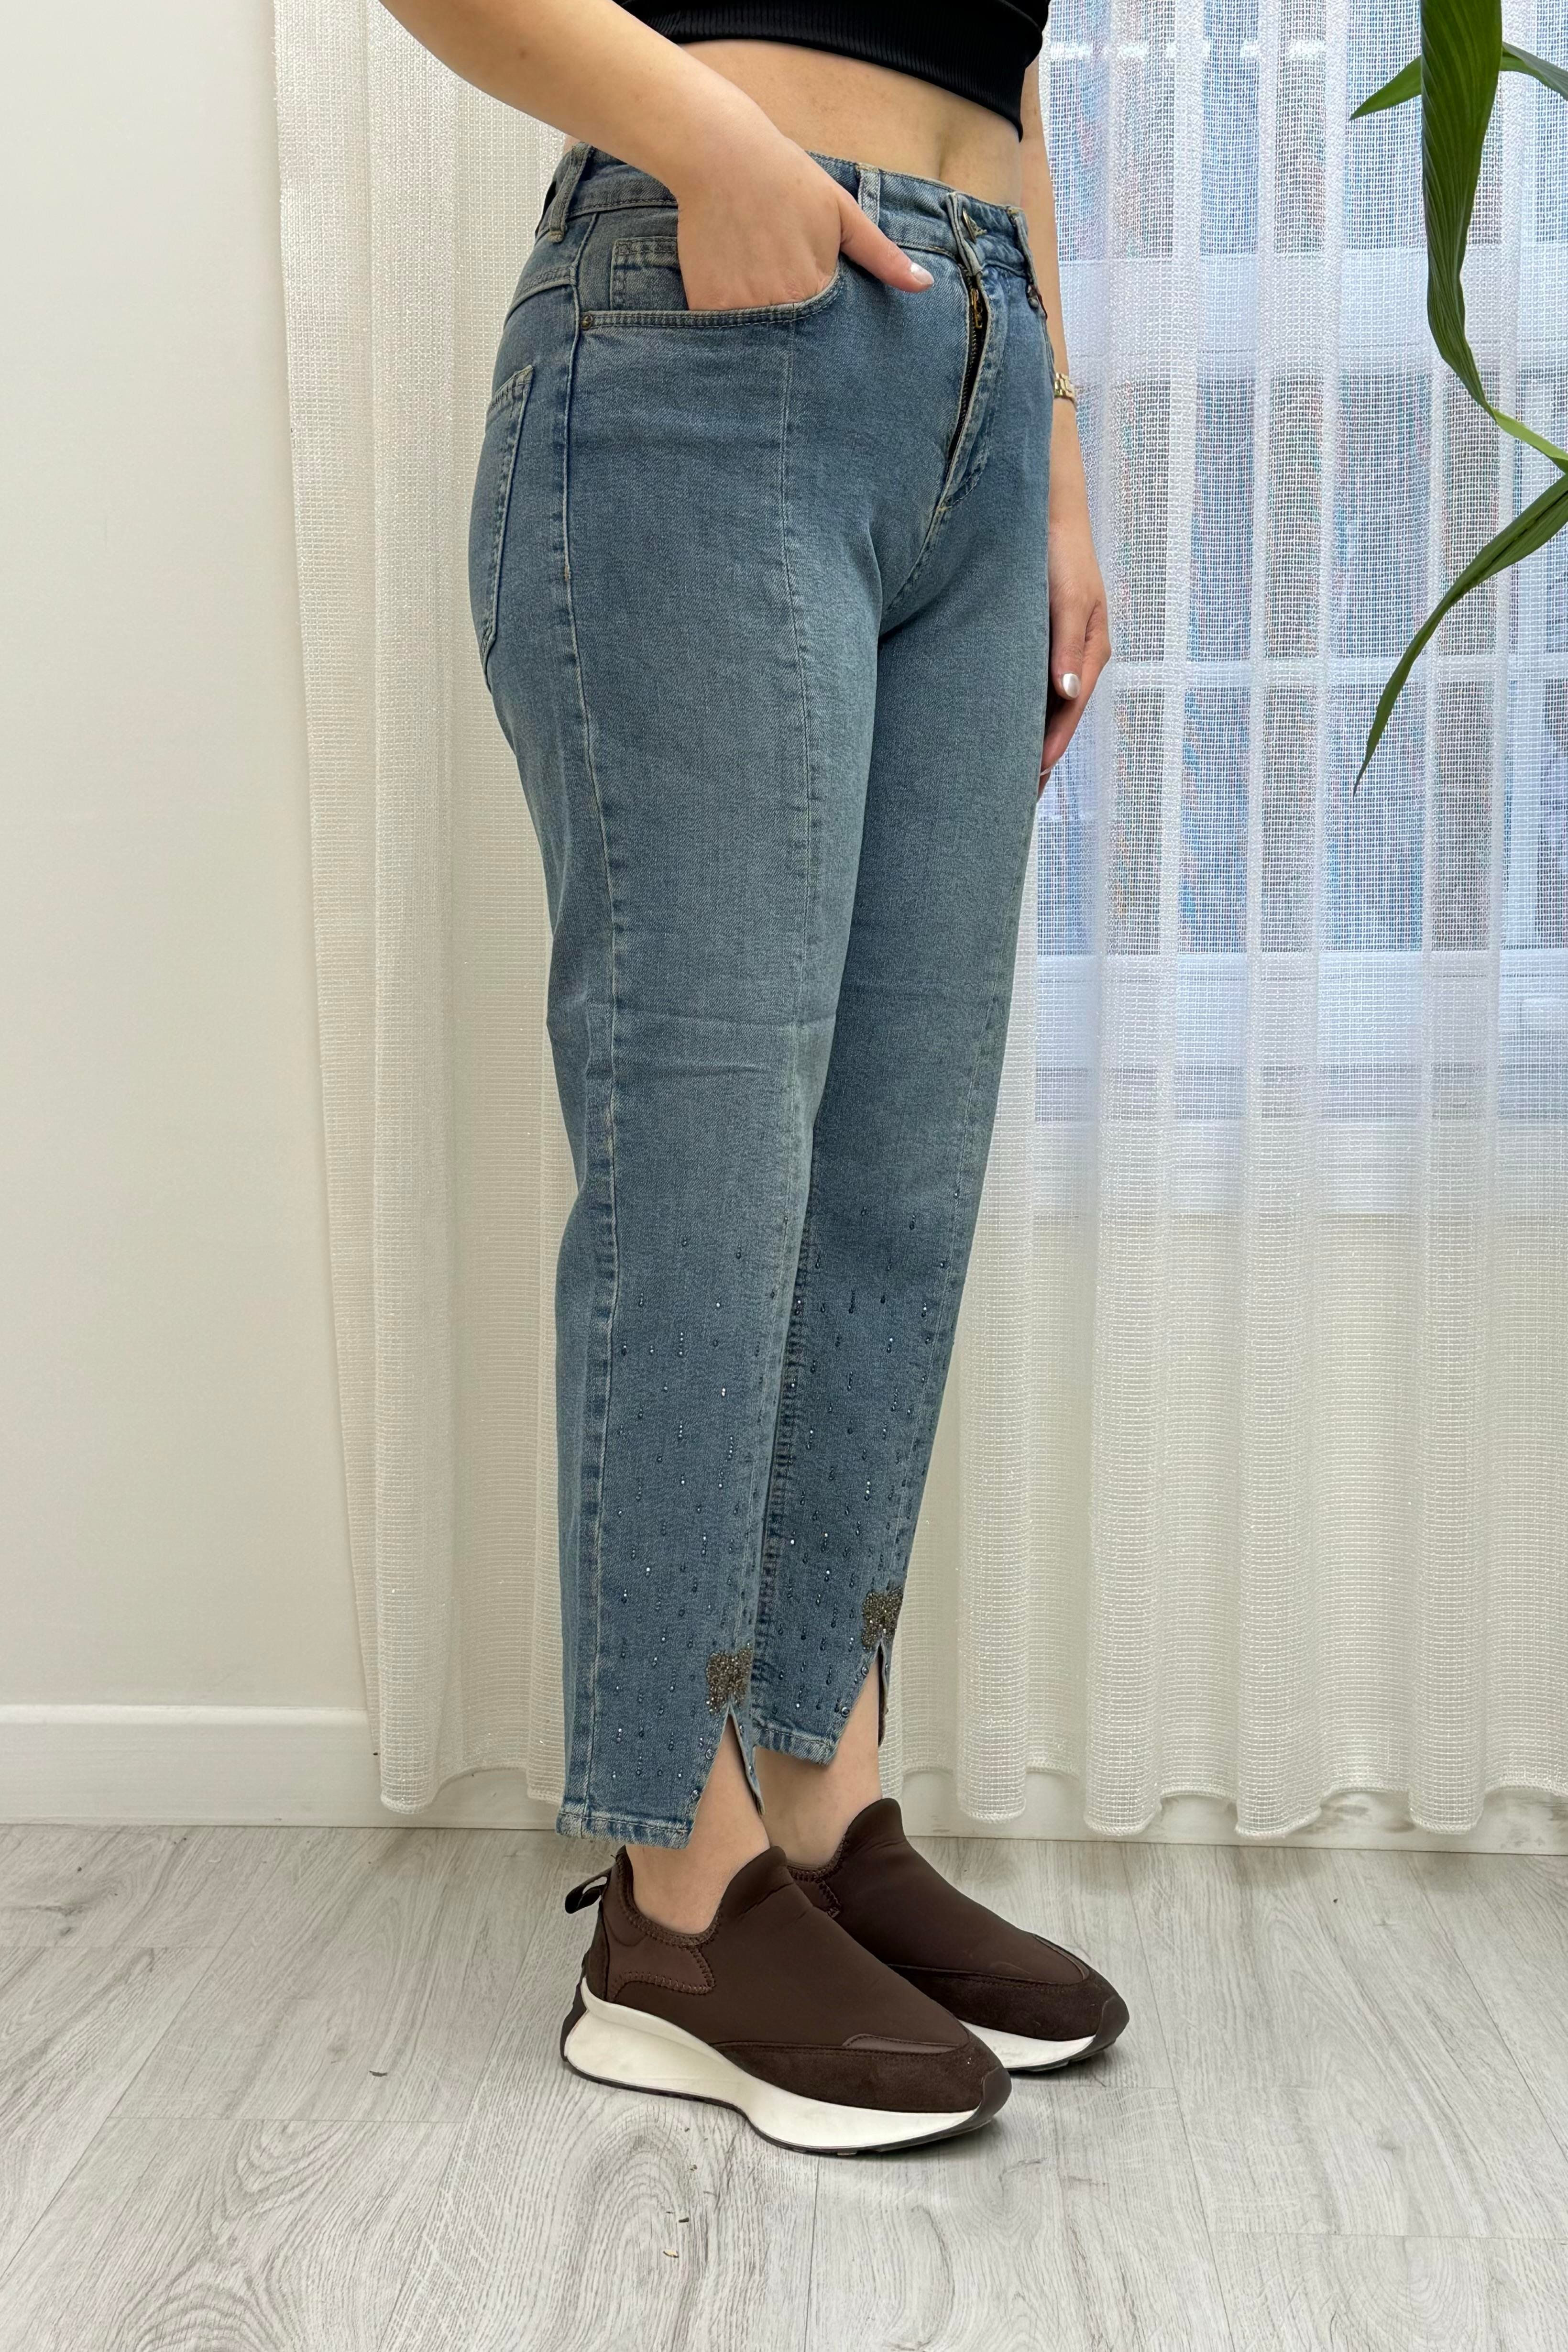 Paçası Kurdele Detay Taşlı Büyük Beden Pantolon 6005 - Bakır Tint - Bilen  Giyim